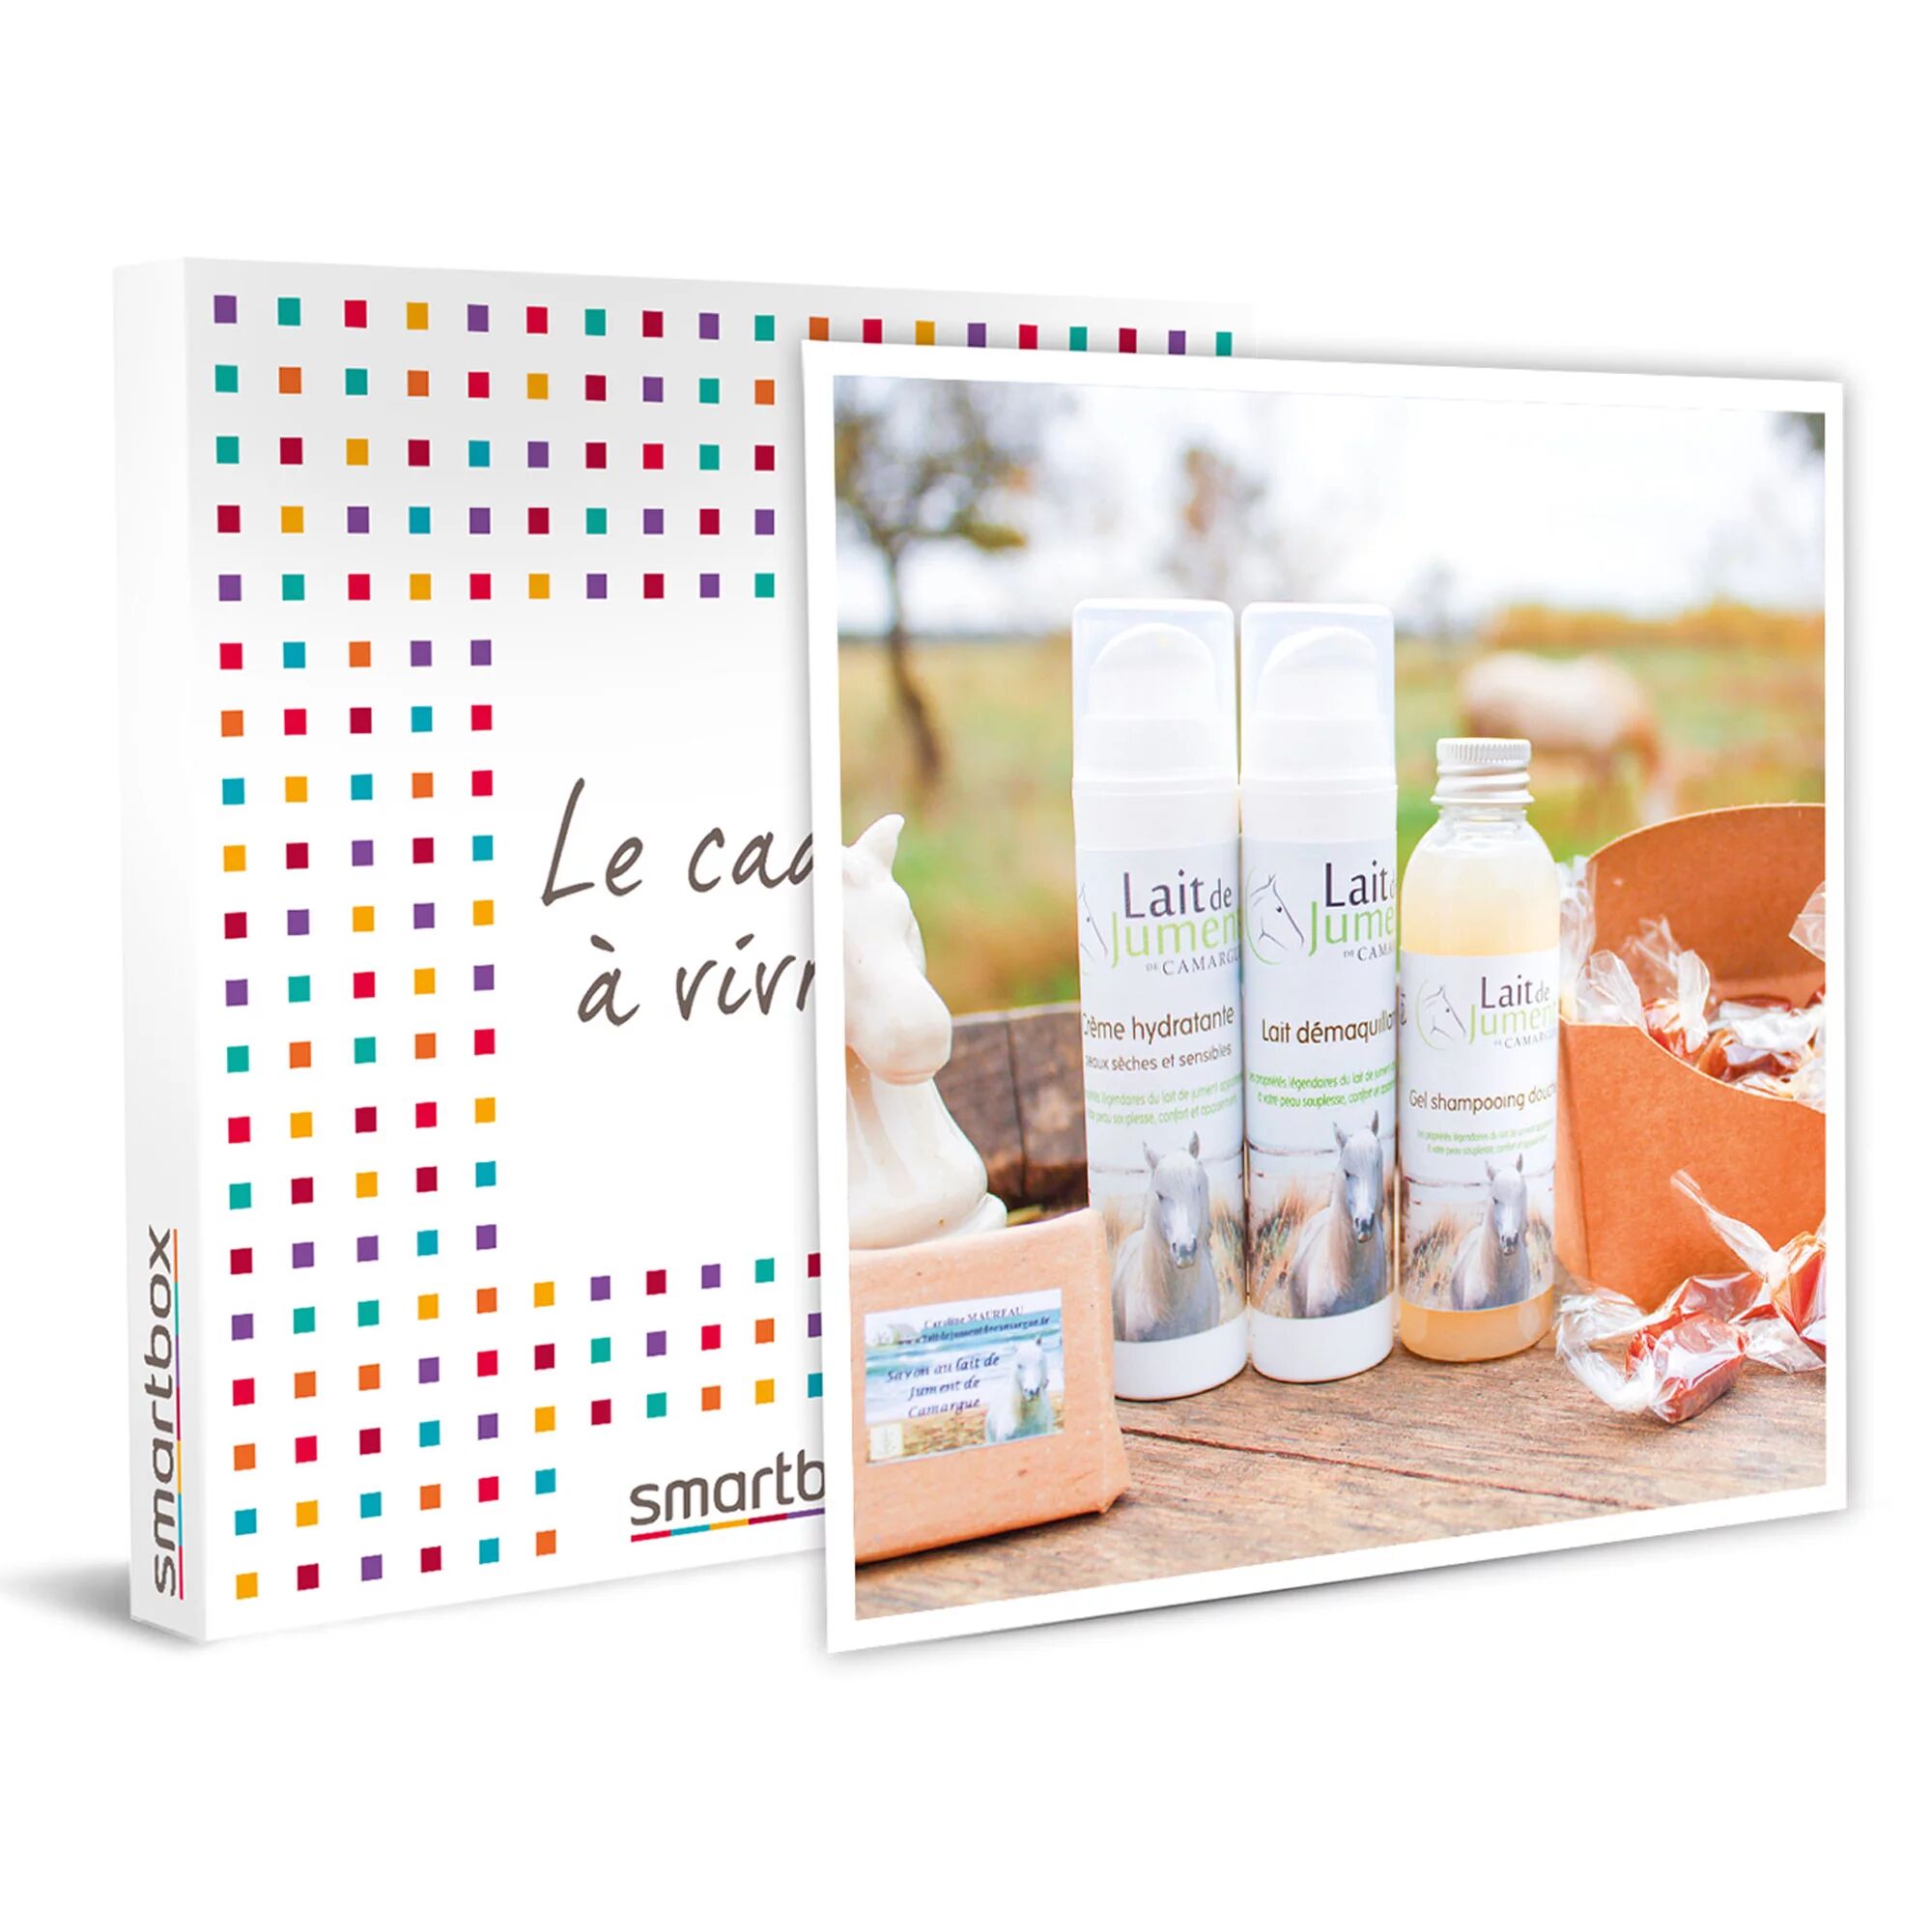 Smartbox Coffret de soins hydratants au lait de jument de Camargue Coffret cadeau Smartbox